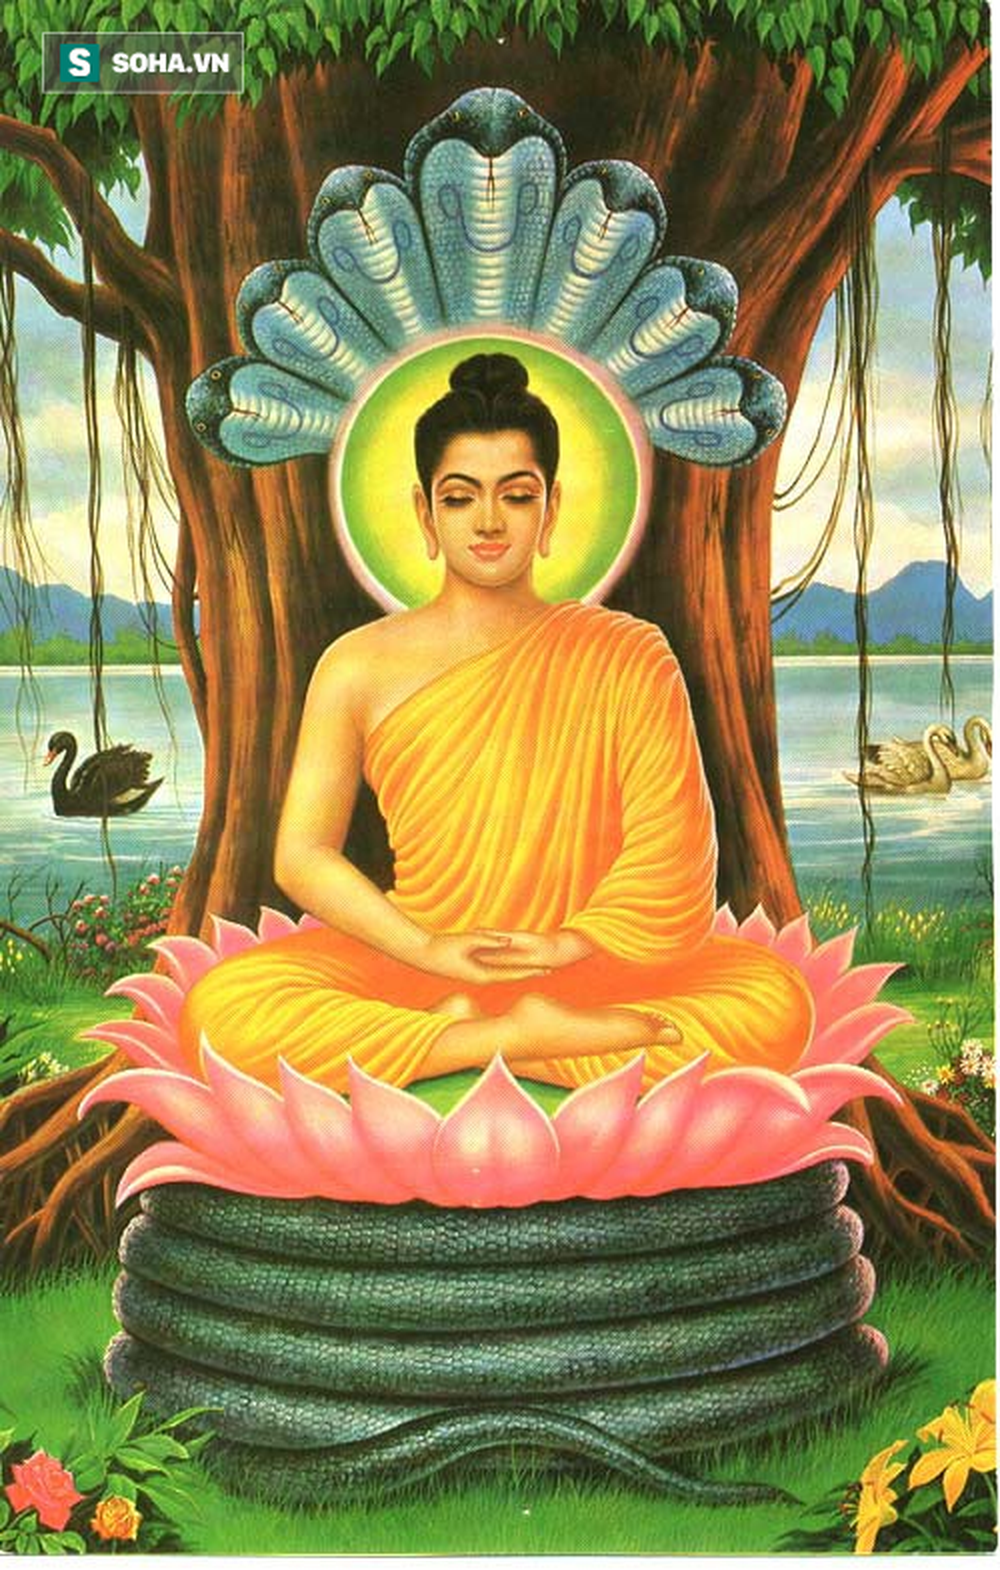 Câu chuyện cuộc đời Đức Phật và lời răn cuối cùng của Ngài trước khi đi vào cõi Niết bàn - Ảnh 3.